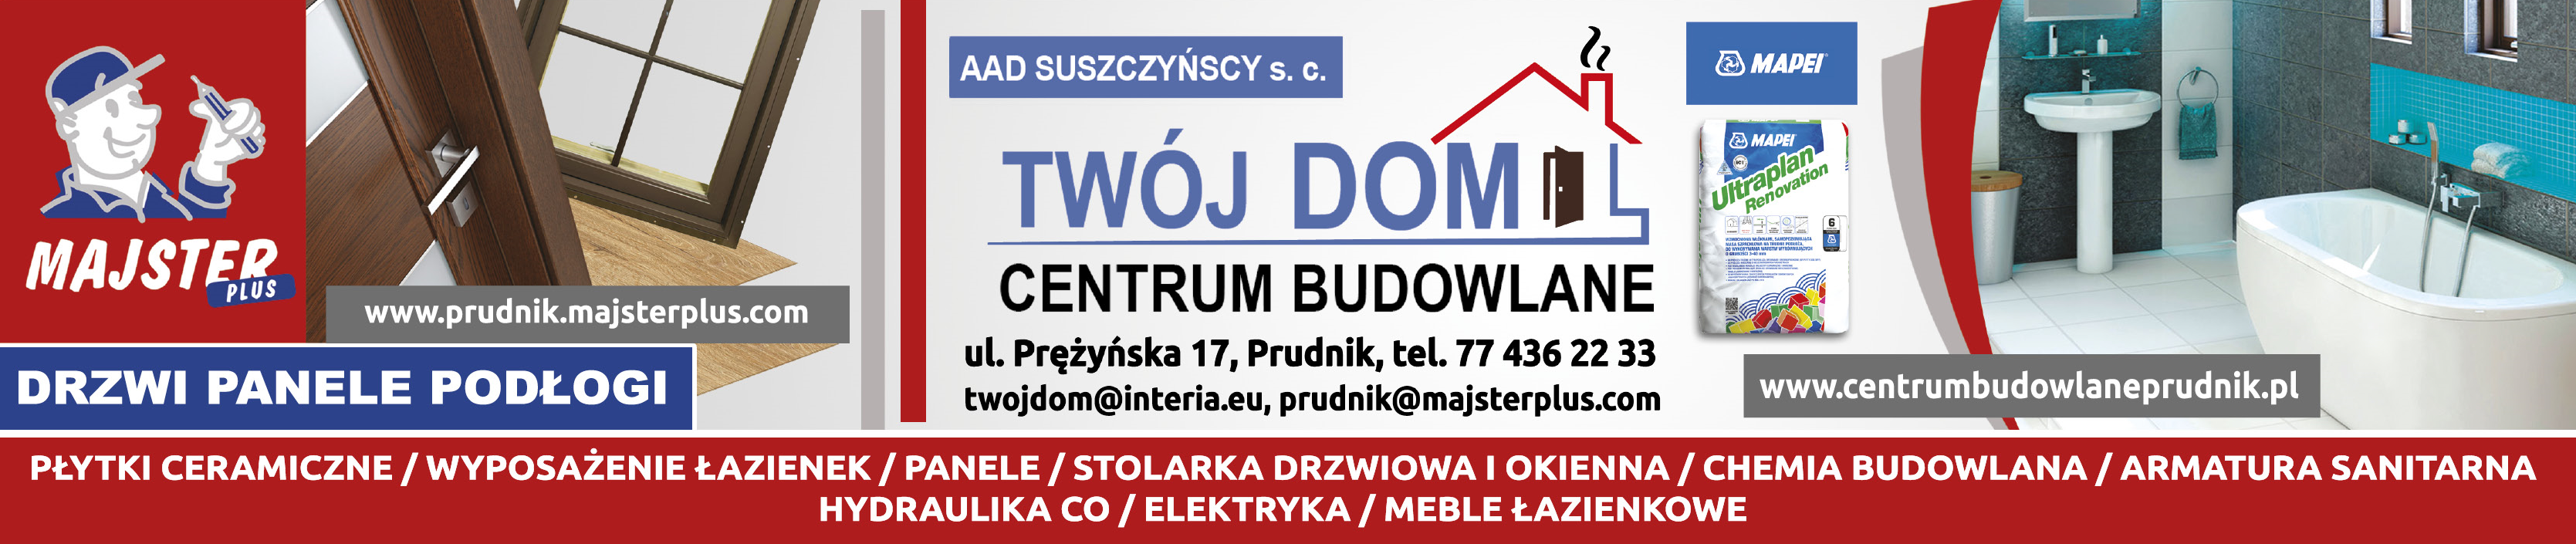 AAD SUSZCZYŃSCY s.c. Centrum Budowlane "TWÓJ DOM" Prudnik Okna / Drzwi / Panele / Płytki / Armatura